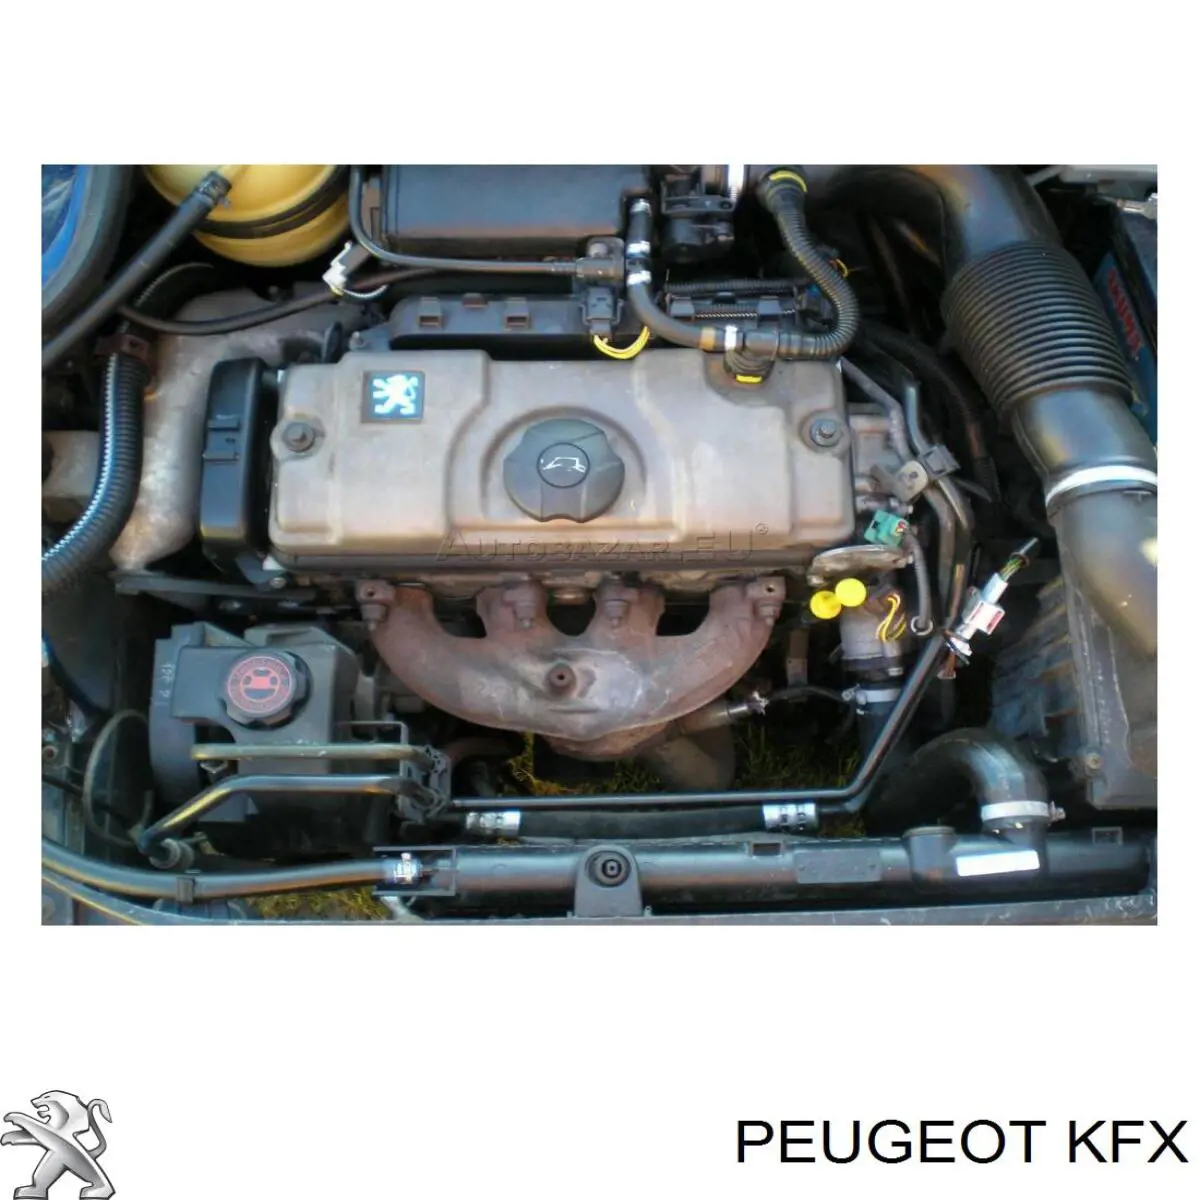 KFX Peugeot/Citroen motor completo